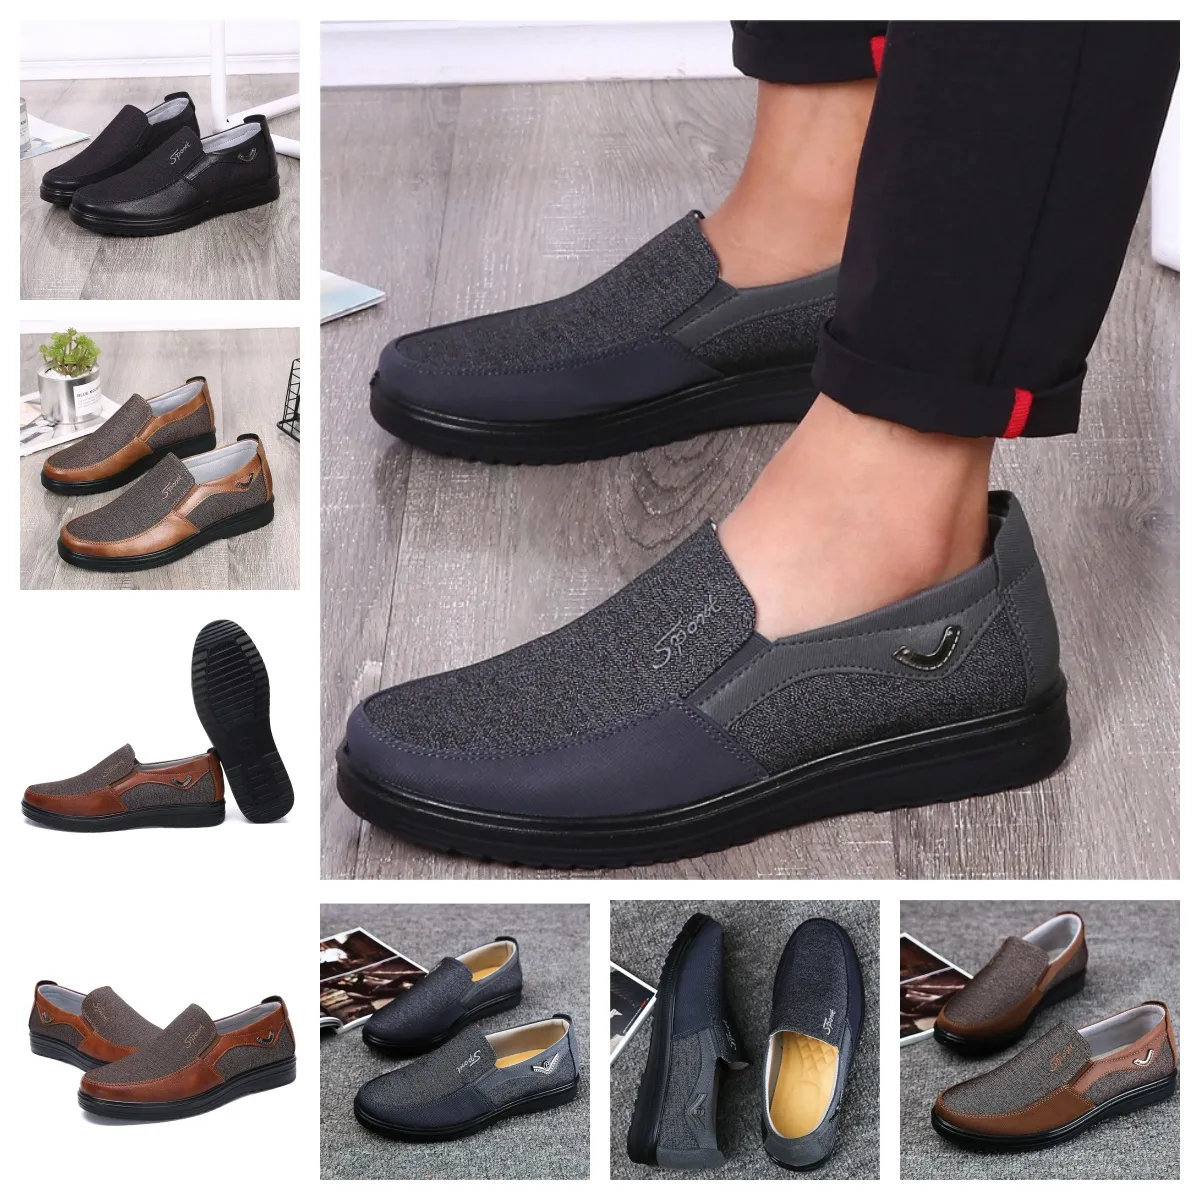 GAI комфортная мужская обувь Черная обувь с круглым носком для вечеринки Банкет на открытом воздухе Классический костюм Мужская деловая дизайнерская обувь на каблуке Размер обуви 38-50 евро мягкие